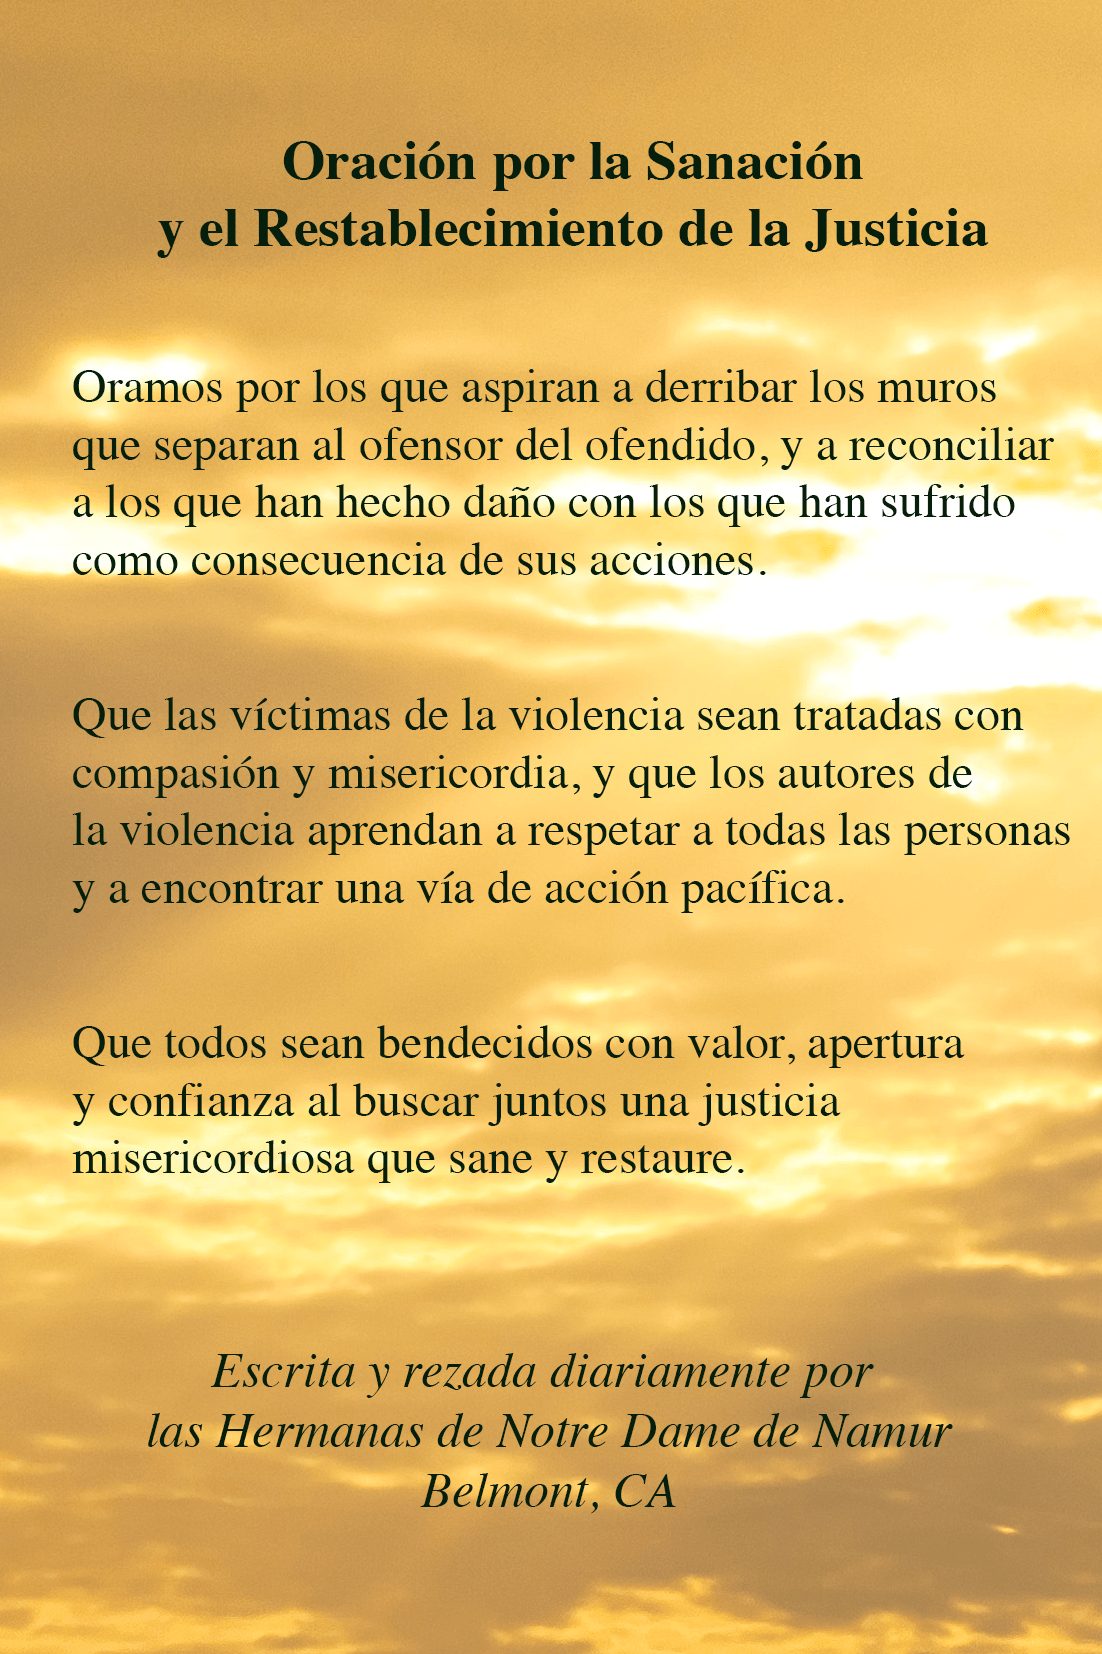 Prayer for Healing Spanish